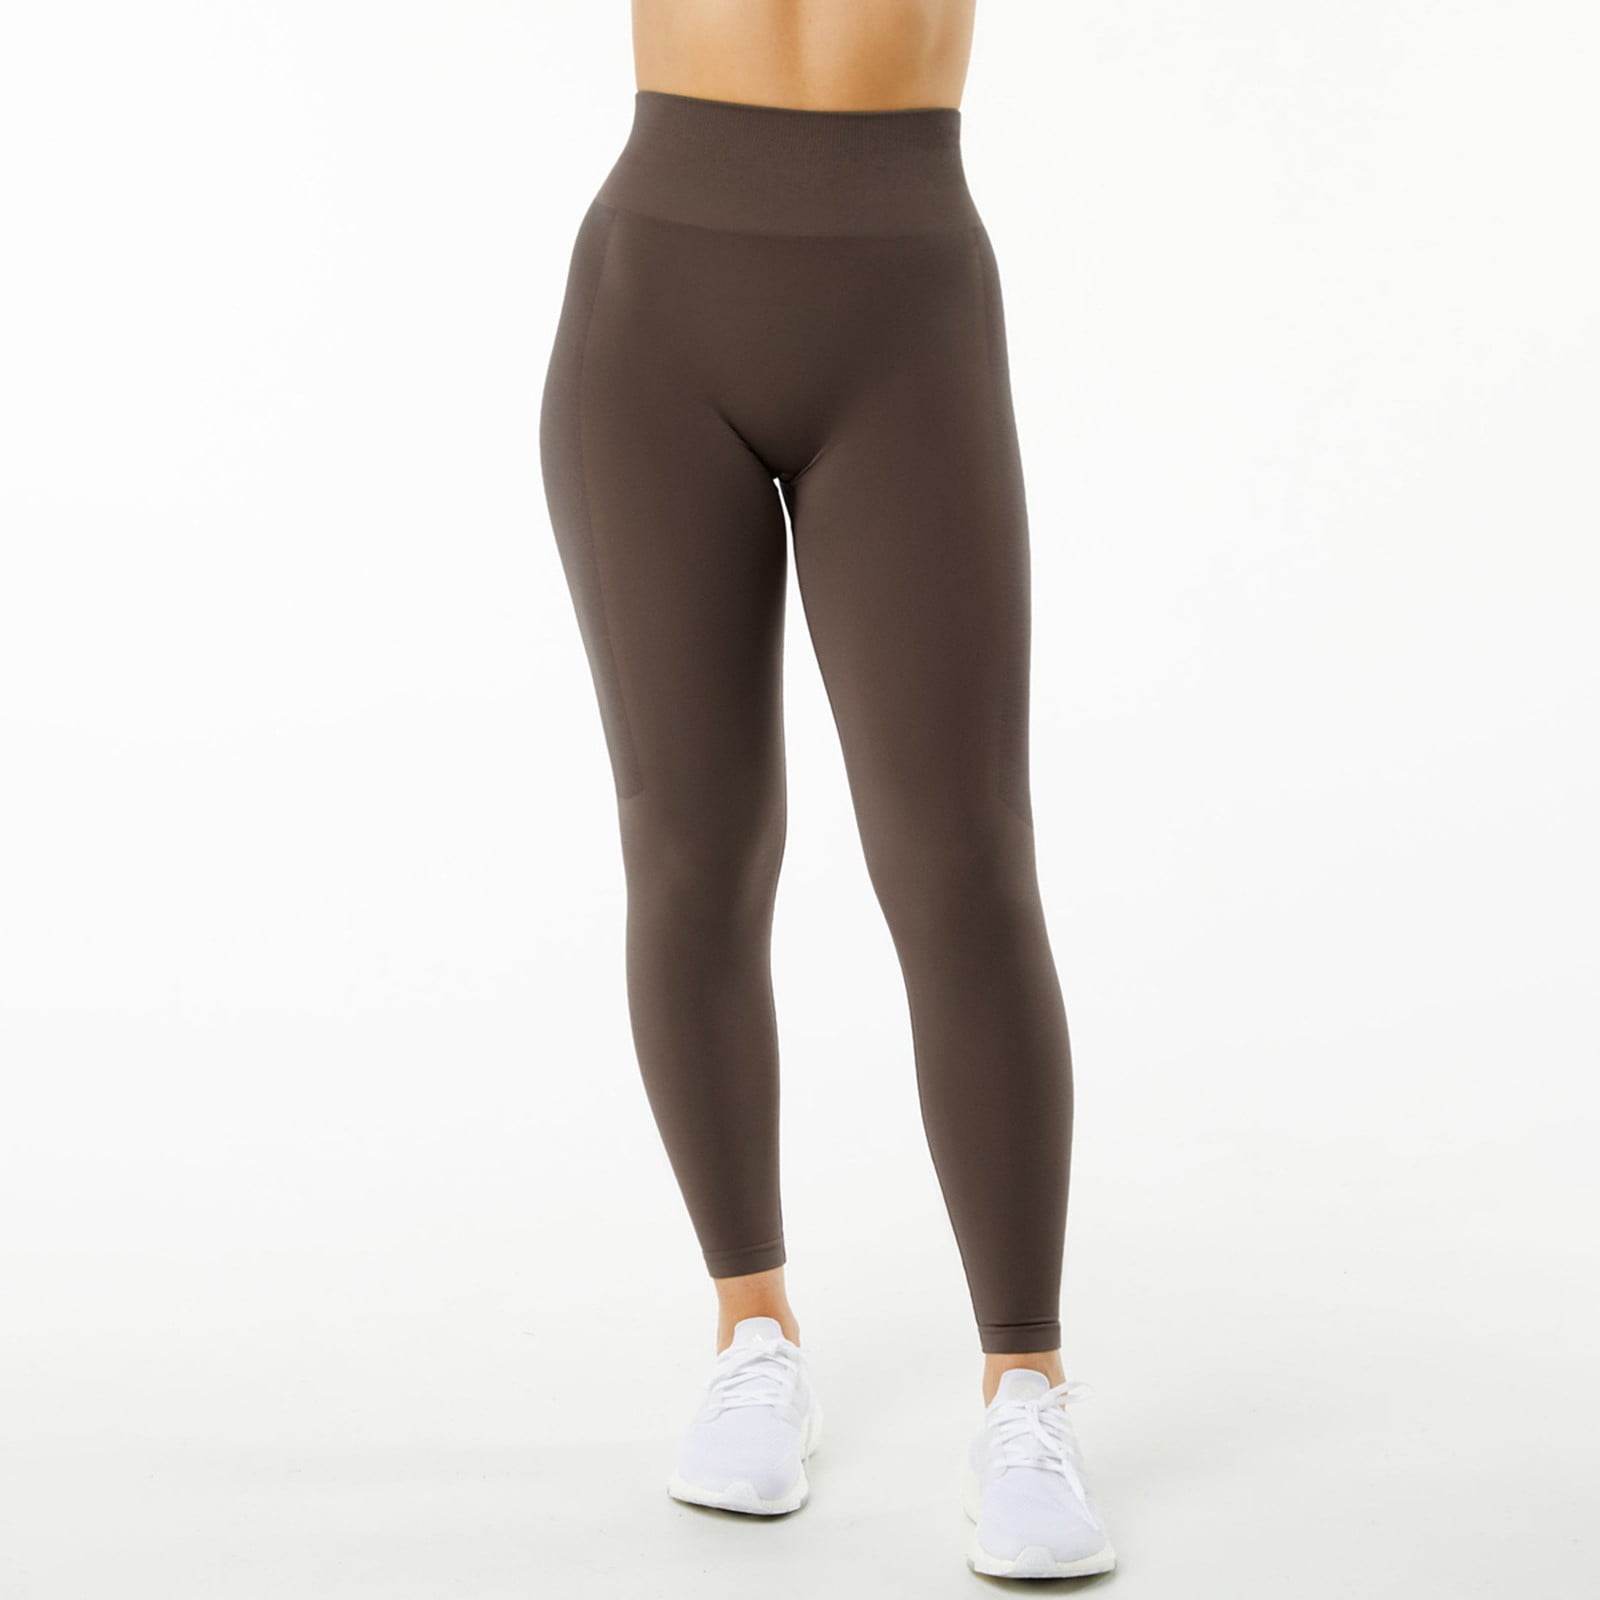 PEASKJP Flare Leggings for Women Buttery Soft Athletic Yoga Pants